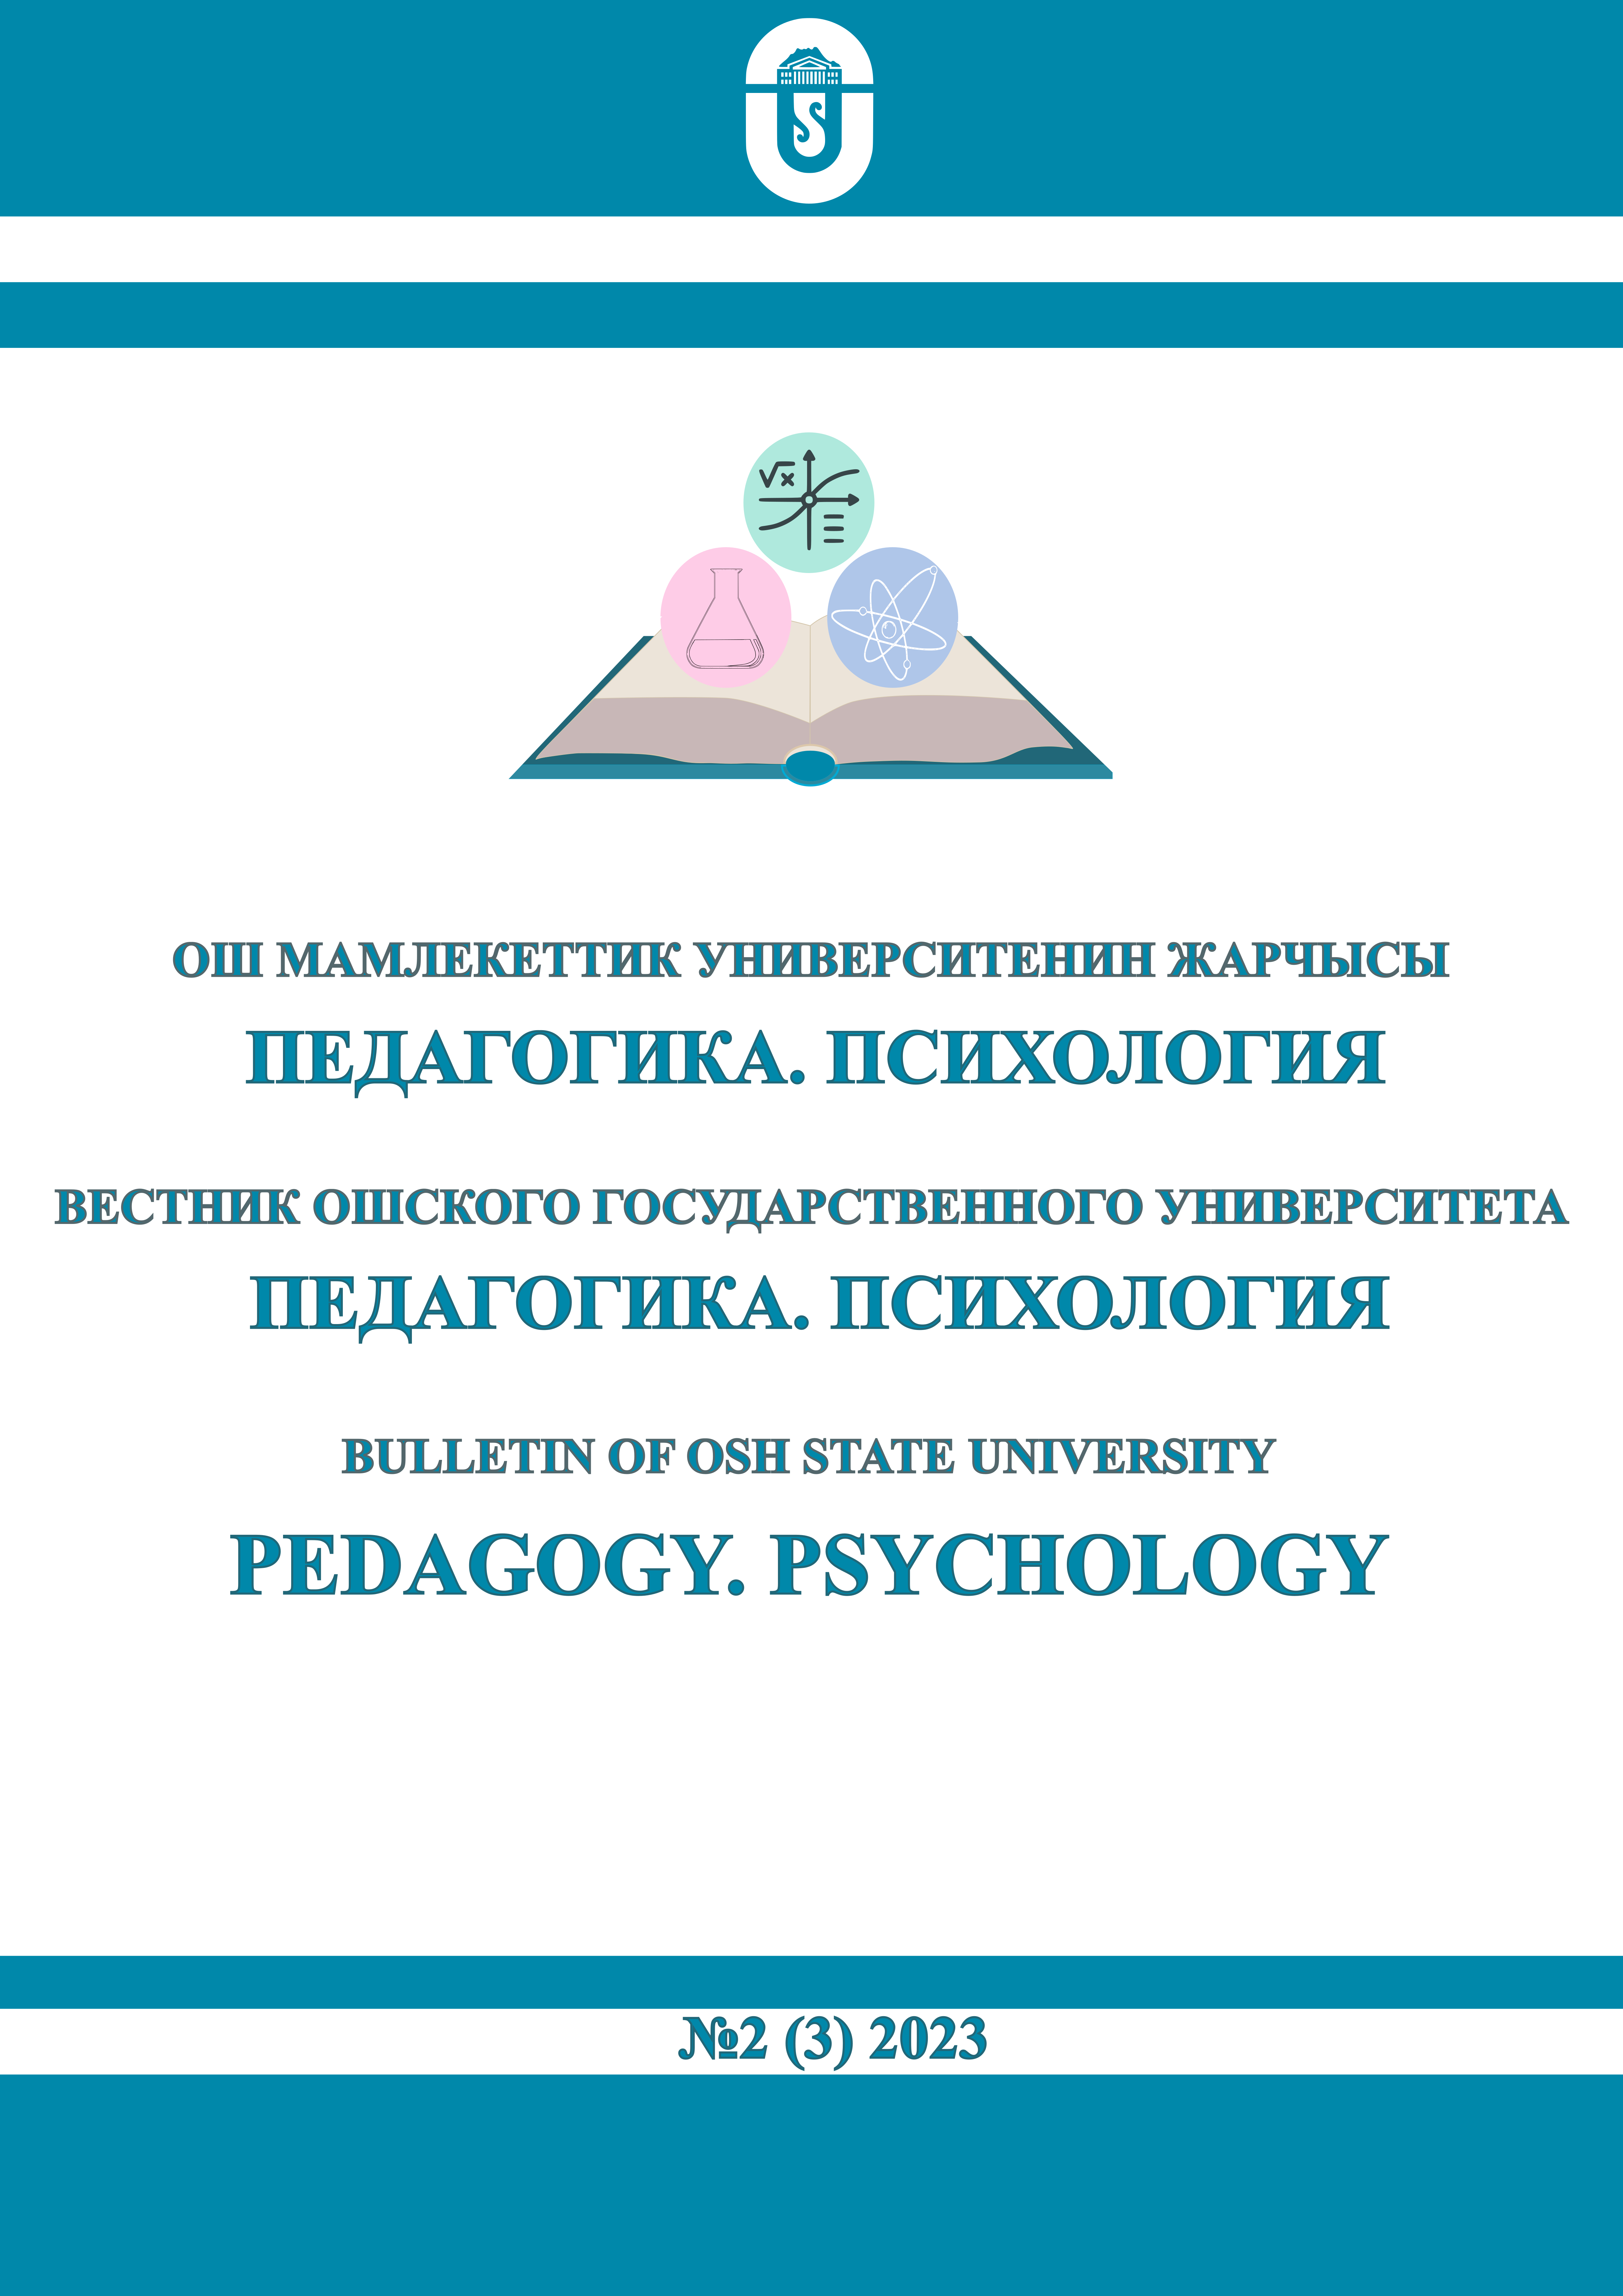 					Көрсөтүү № 2(3) (2023): Ош мамлекеттик университетинин Жарчысы. Педагогика. Психология
				